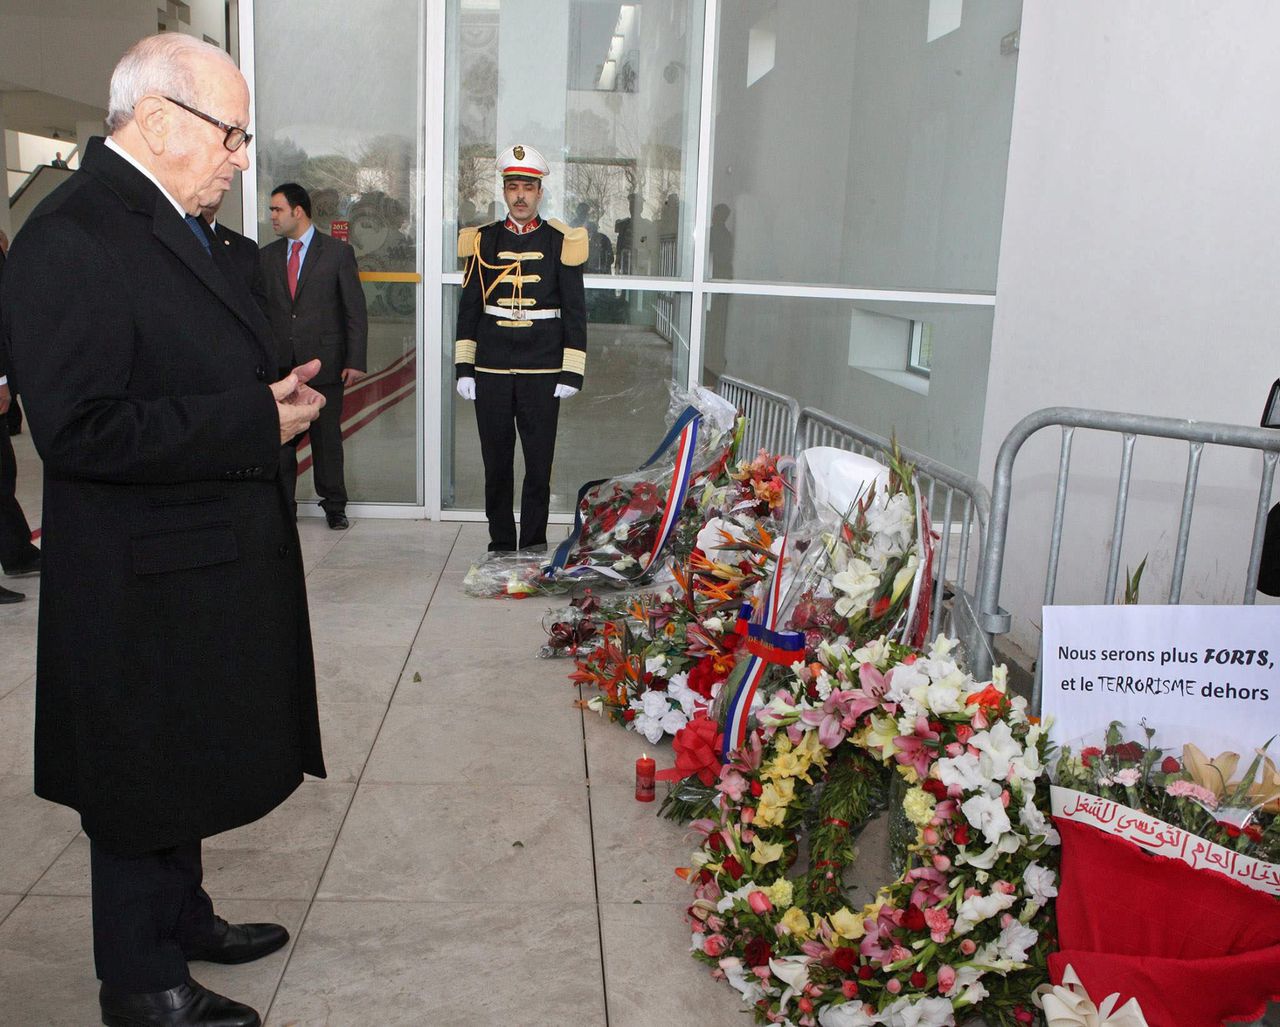 De Tunesische president Beji Caid Essebsi legt een bloemenkrans bij het Bardomuseum in Tunis ter nagedachtenis aan de slachtoffers van de aanslag van afgelopen woensdag.